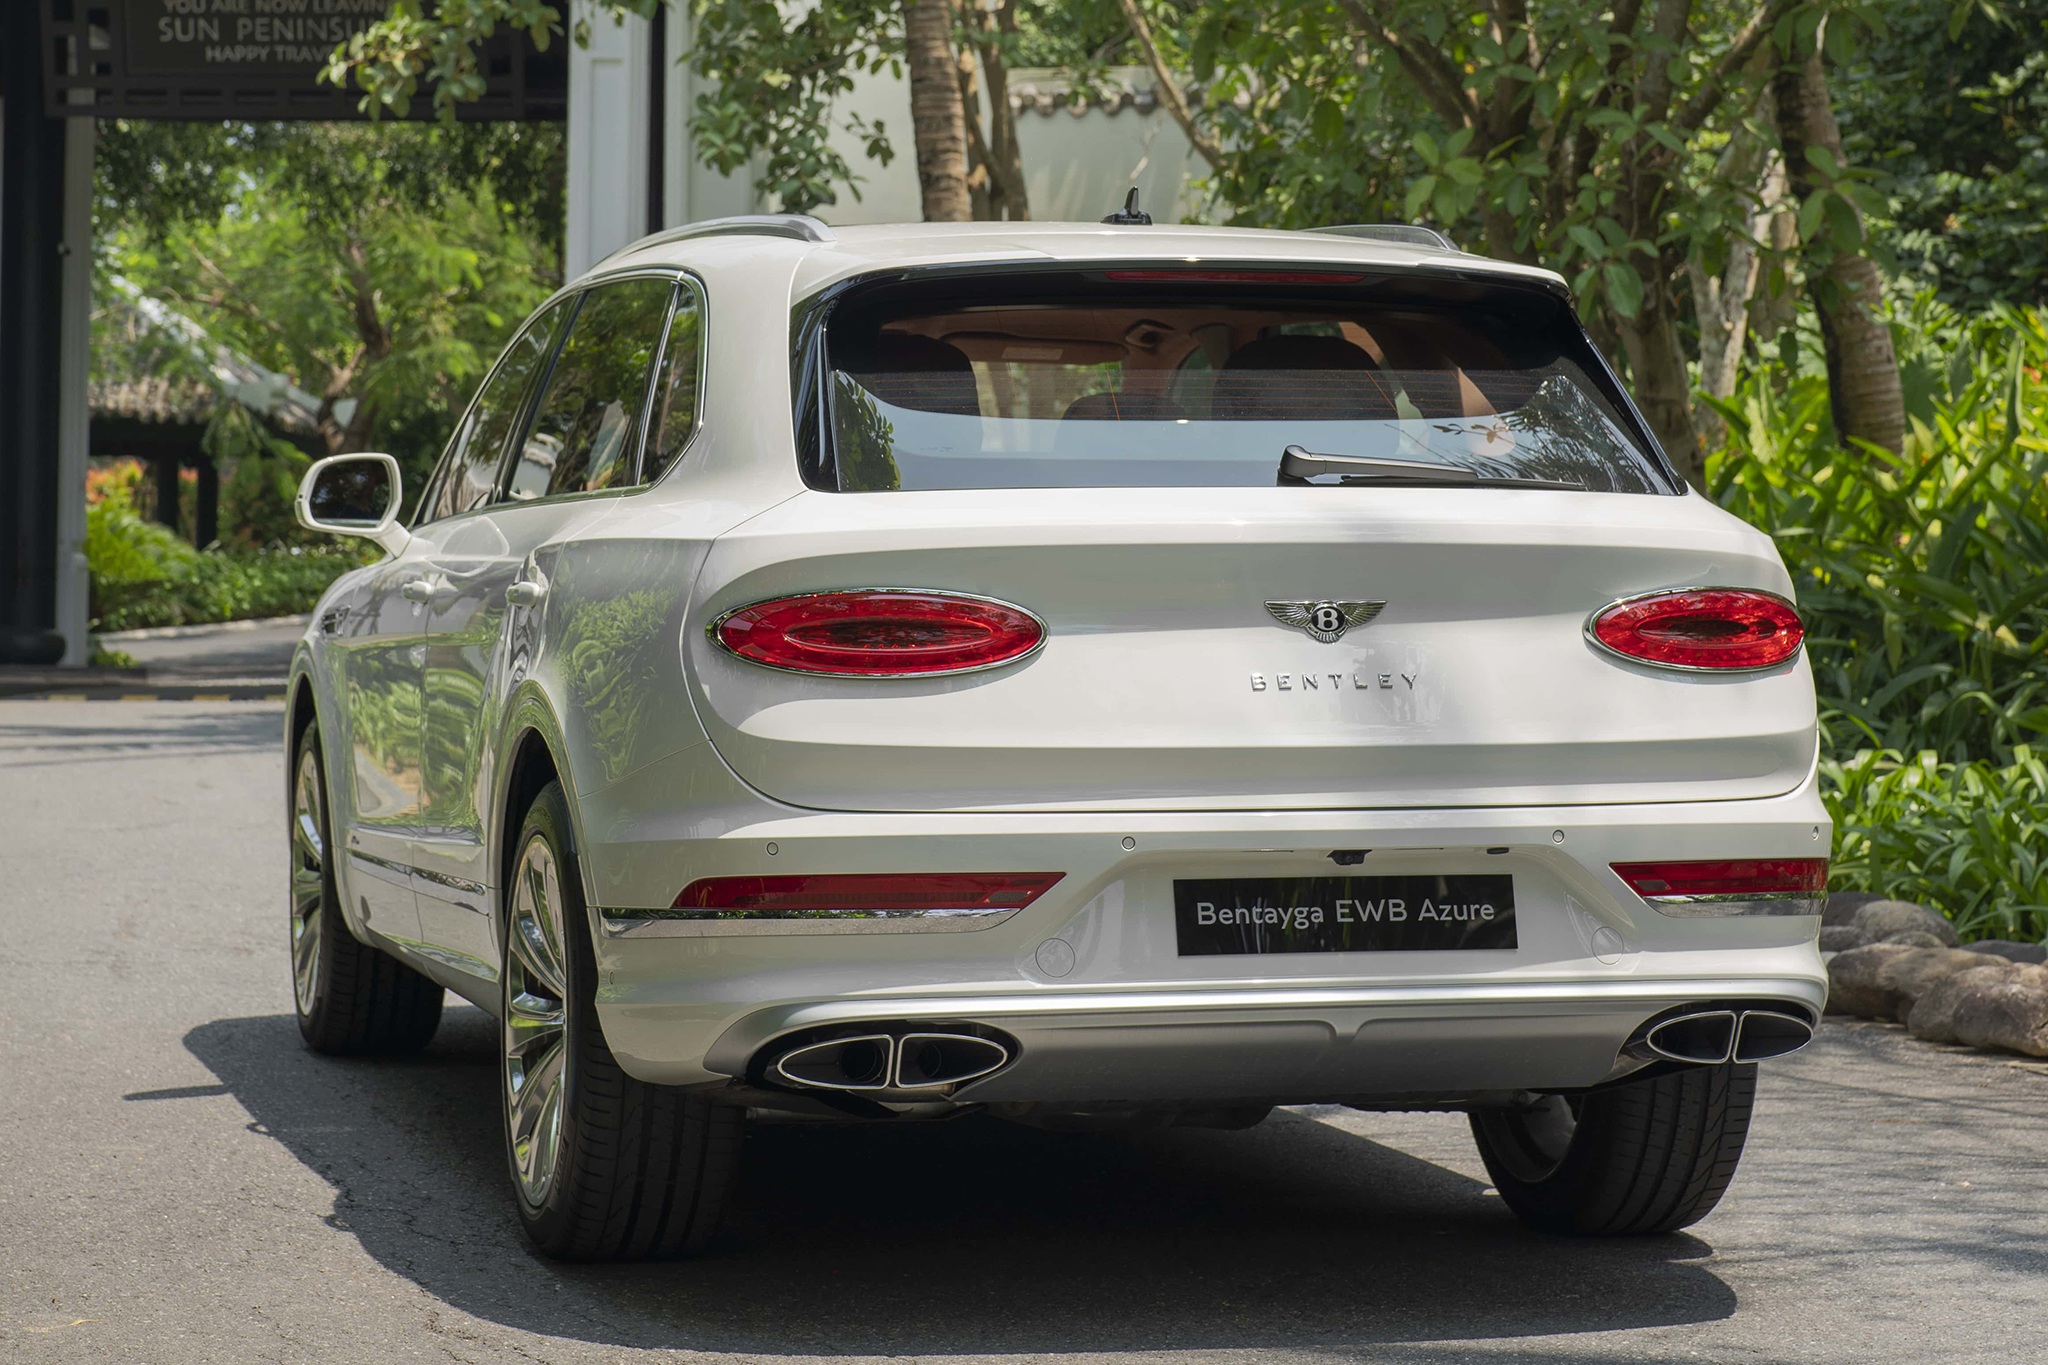 Bentley Bentayga EWB Azure giá 21 tỷ đồng, SUV siêu sang cho đại gia Việt - 2